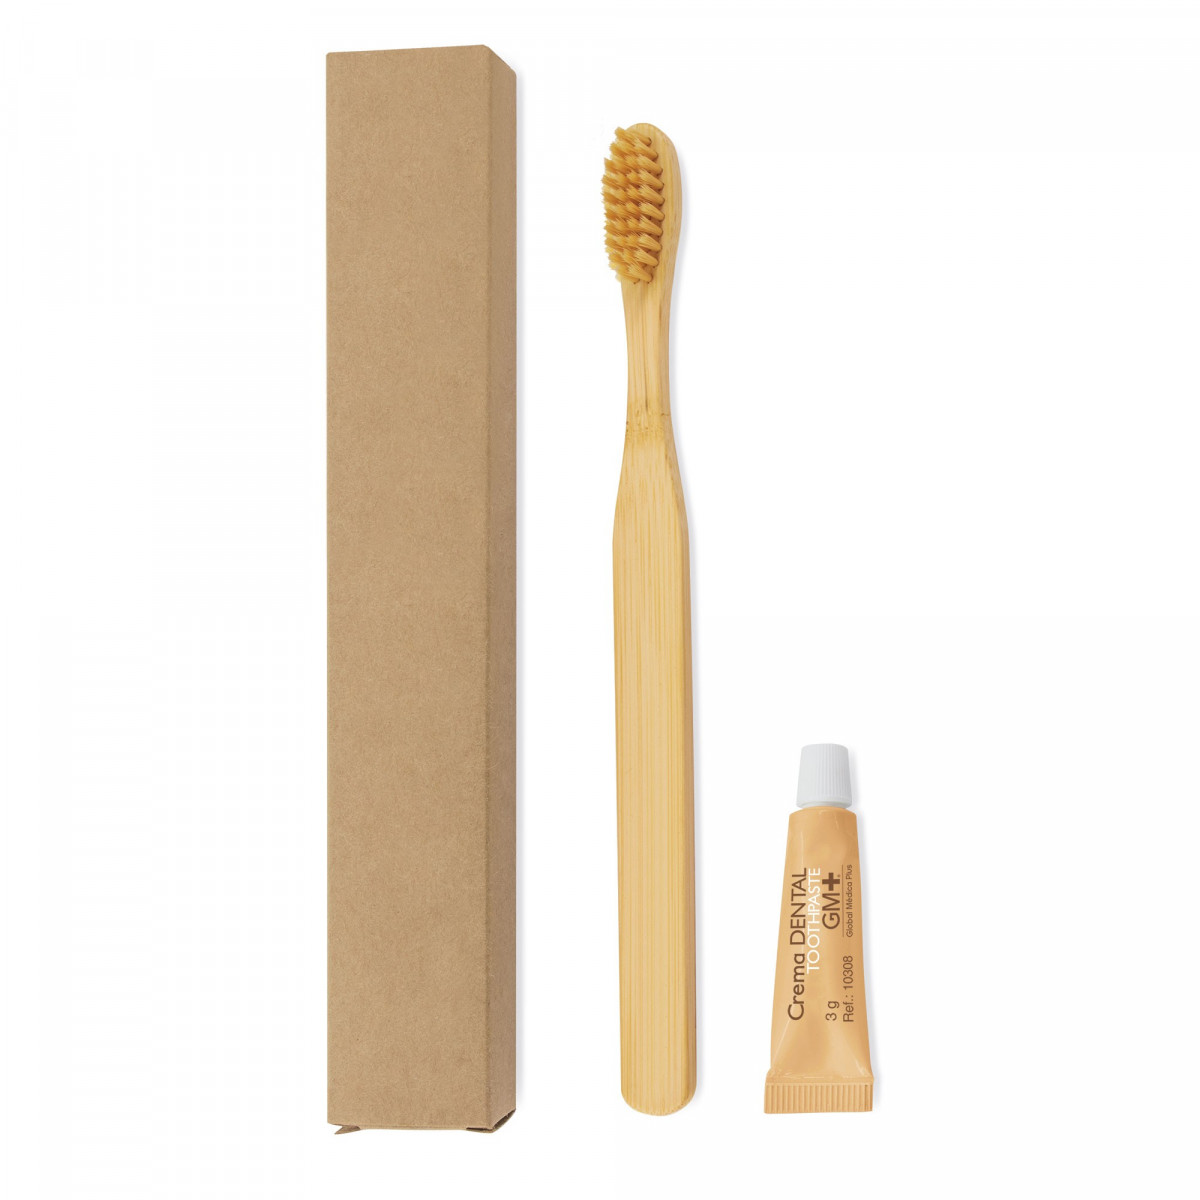 Cepillo de dientes de bambú y pasta dentífrica presentado con caja